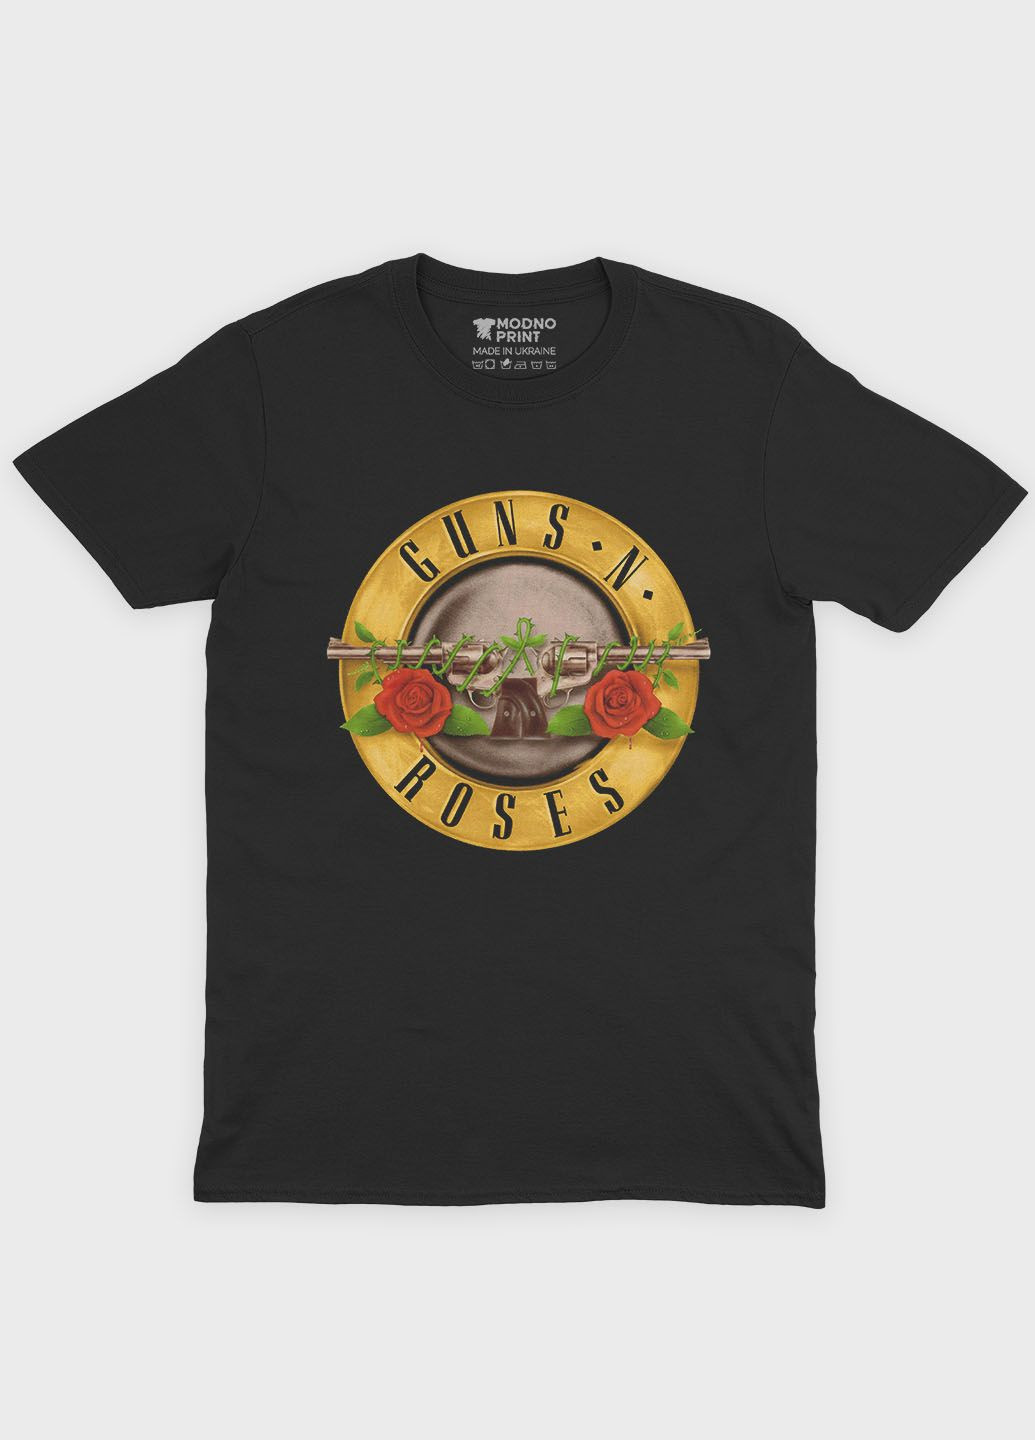 Черная мужская футболка с рок принтом "guns n roses" (ts001-1-bl-004-2-120) Modno